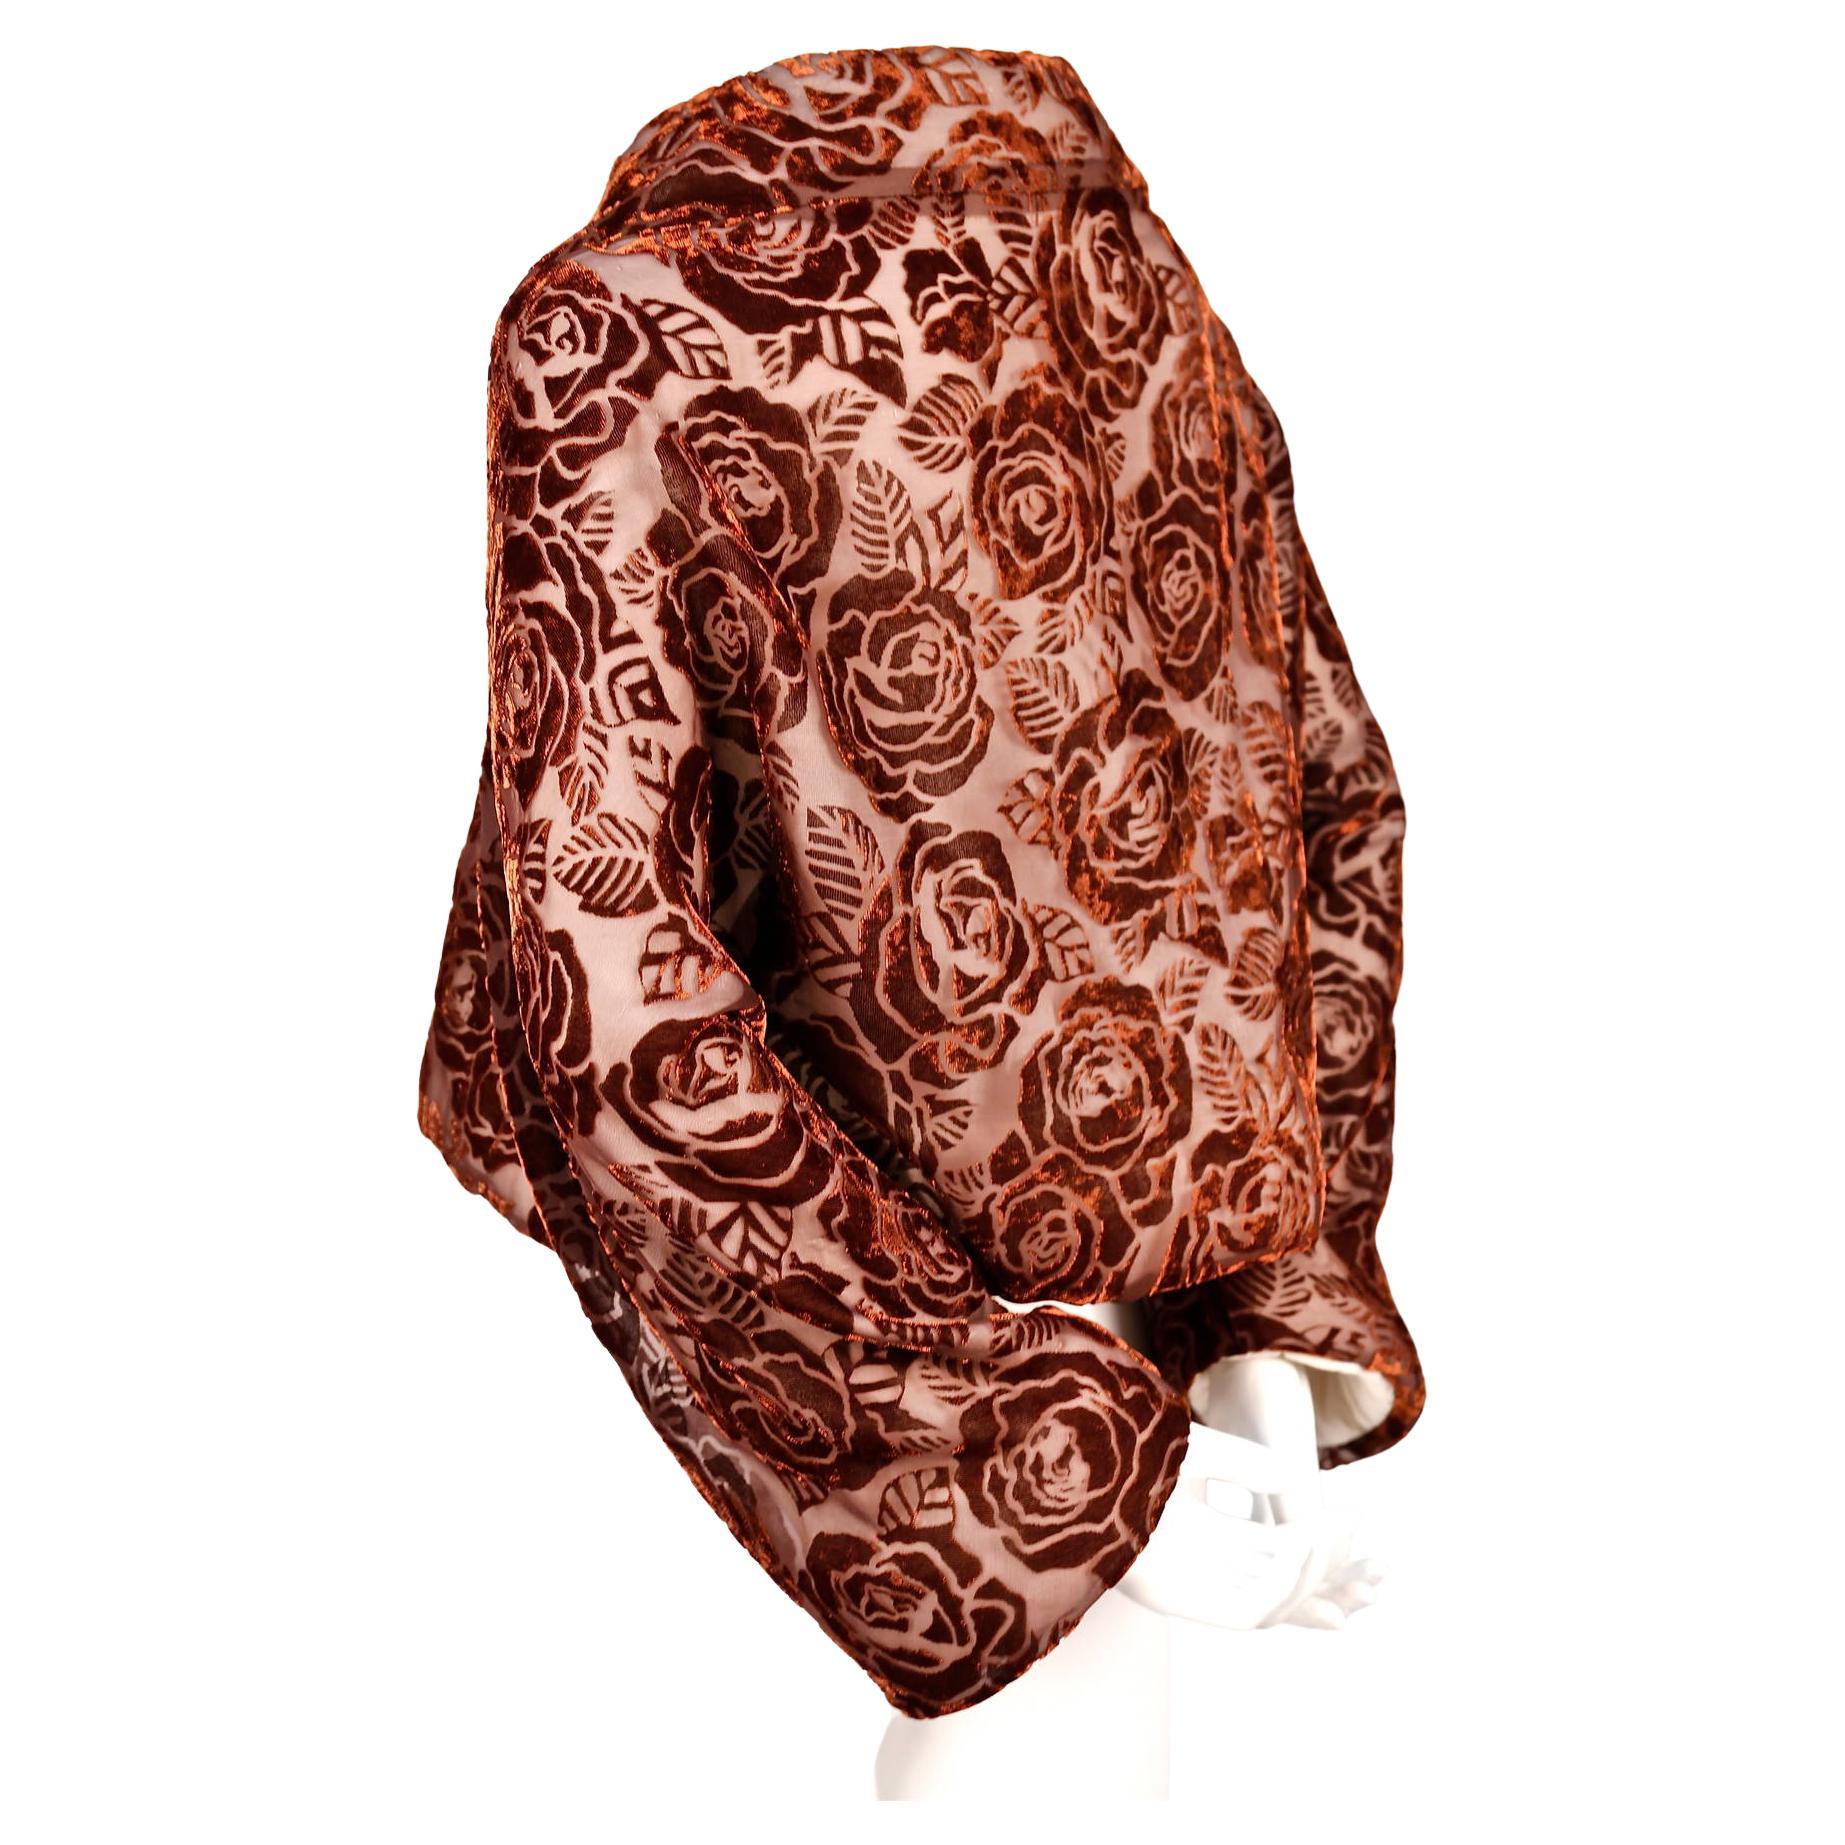 Veste portefeuille en velours floqué marron avec des roses de la collection 'flowering clothes' de Comme Des Garcons datant de l'automne 1996. La même veste dans d'autres tissus et une robe du même tissu ont été présentées sur le podium.  Le Label